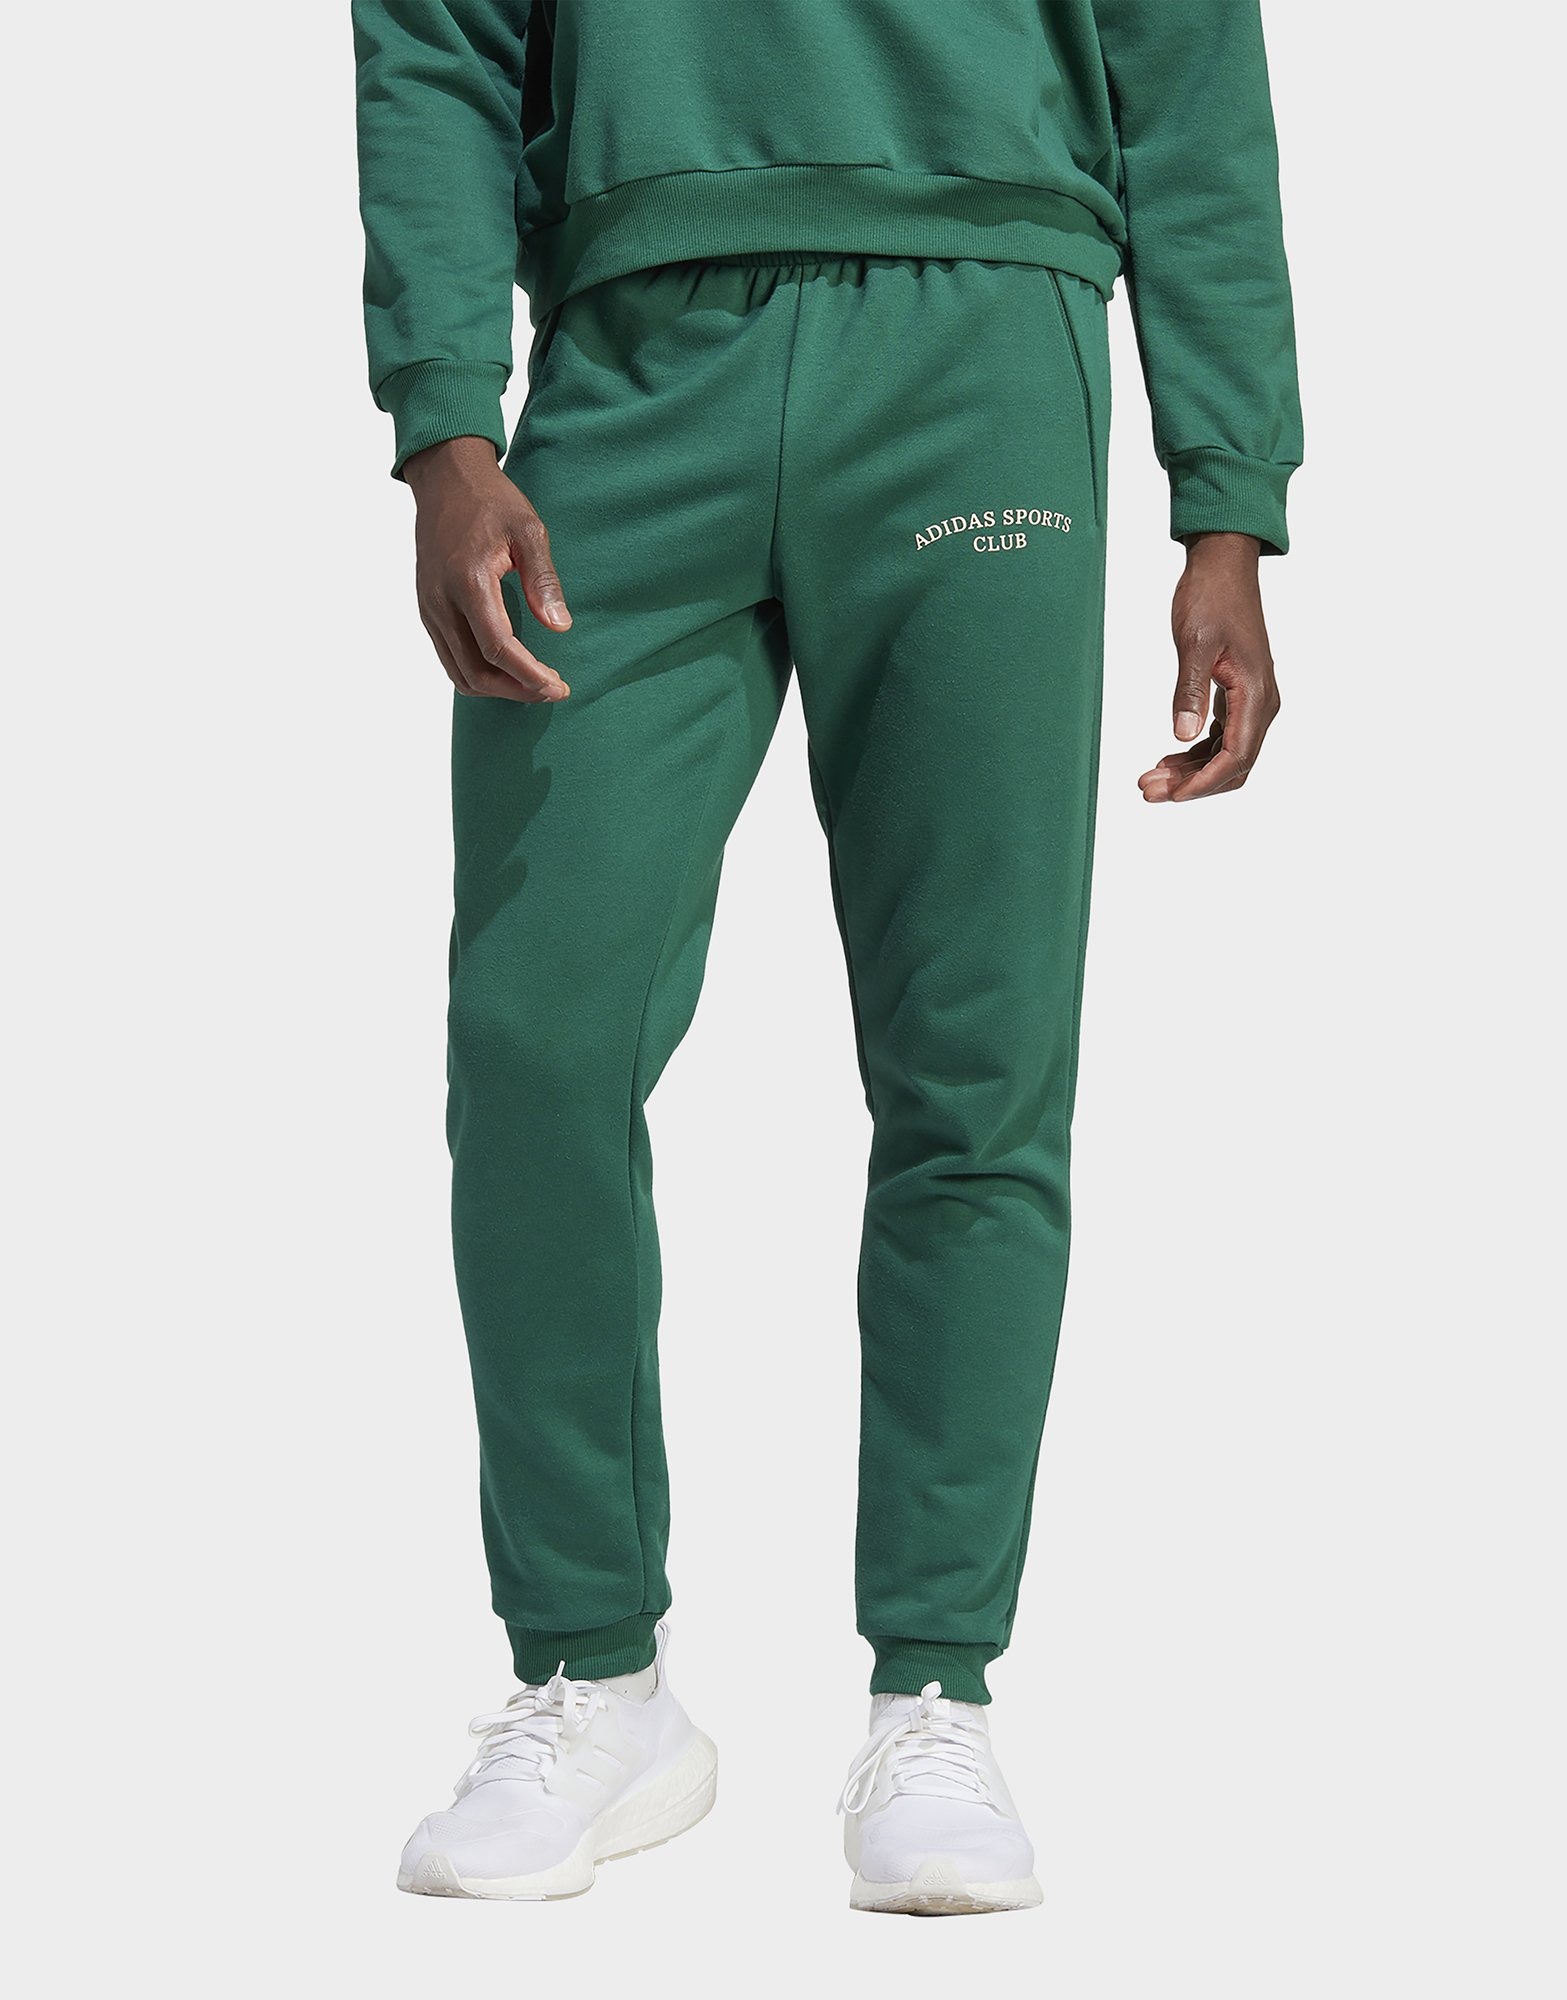 Green adidas Sports Club Pants | JD Sports UK